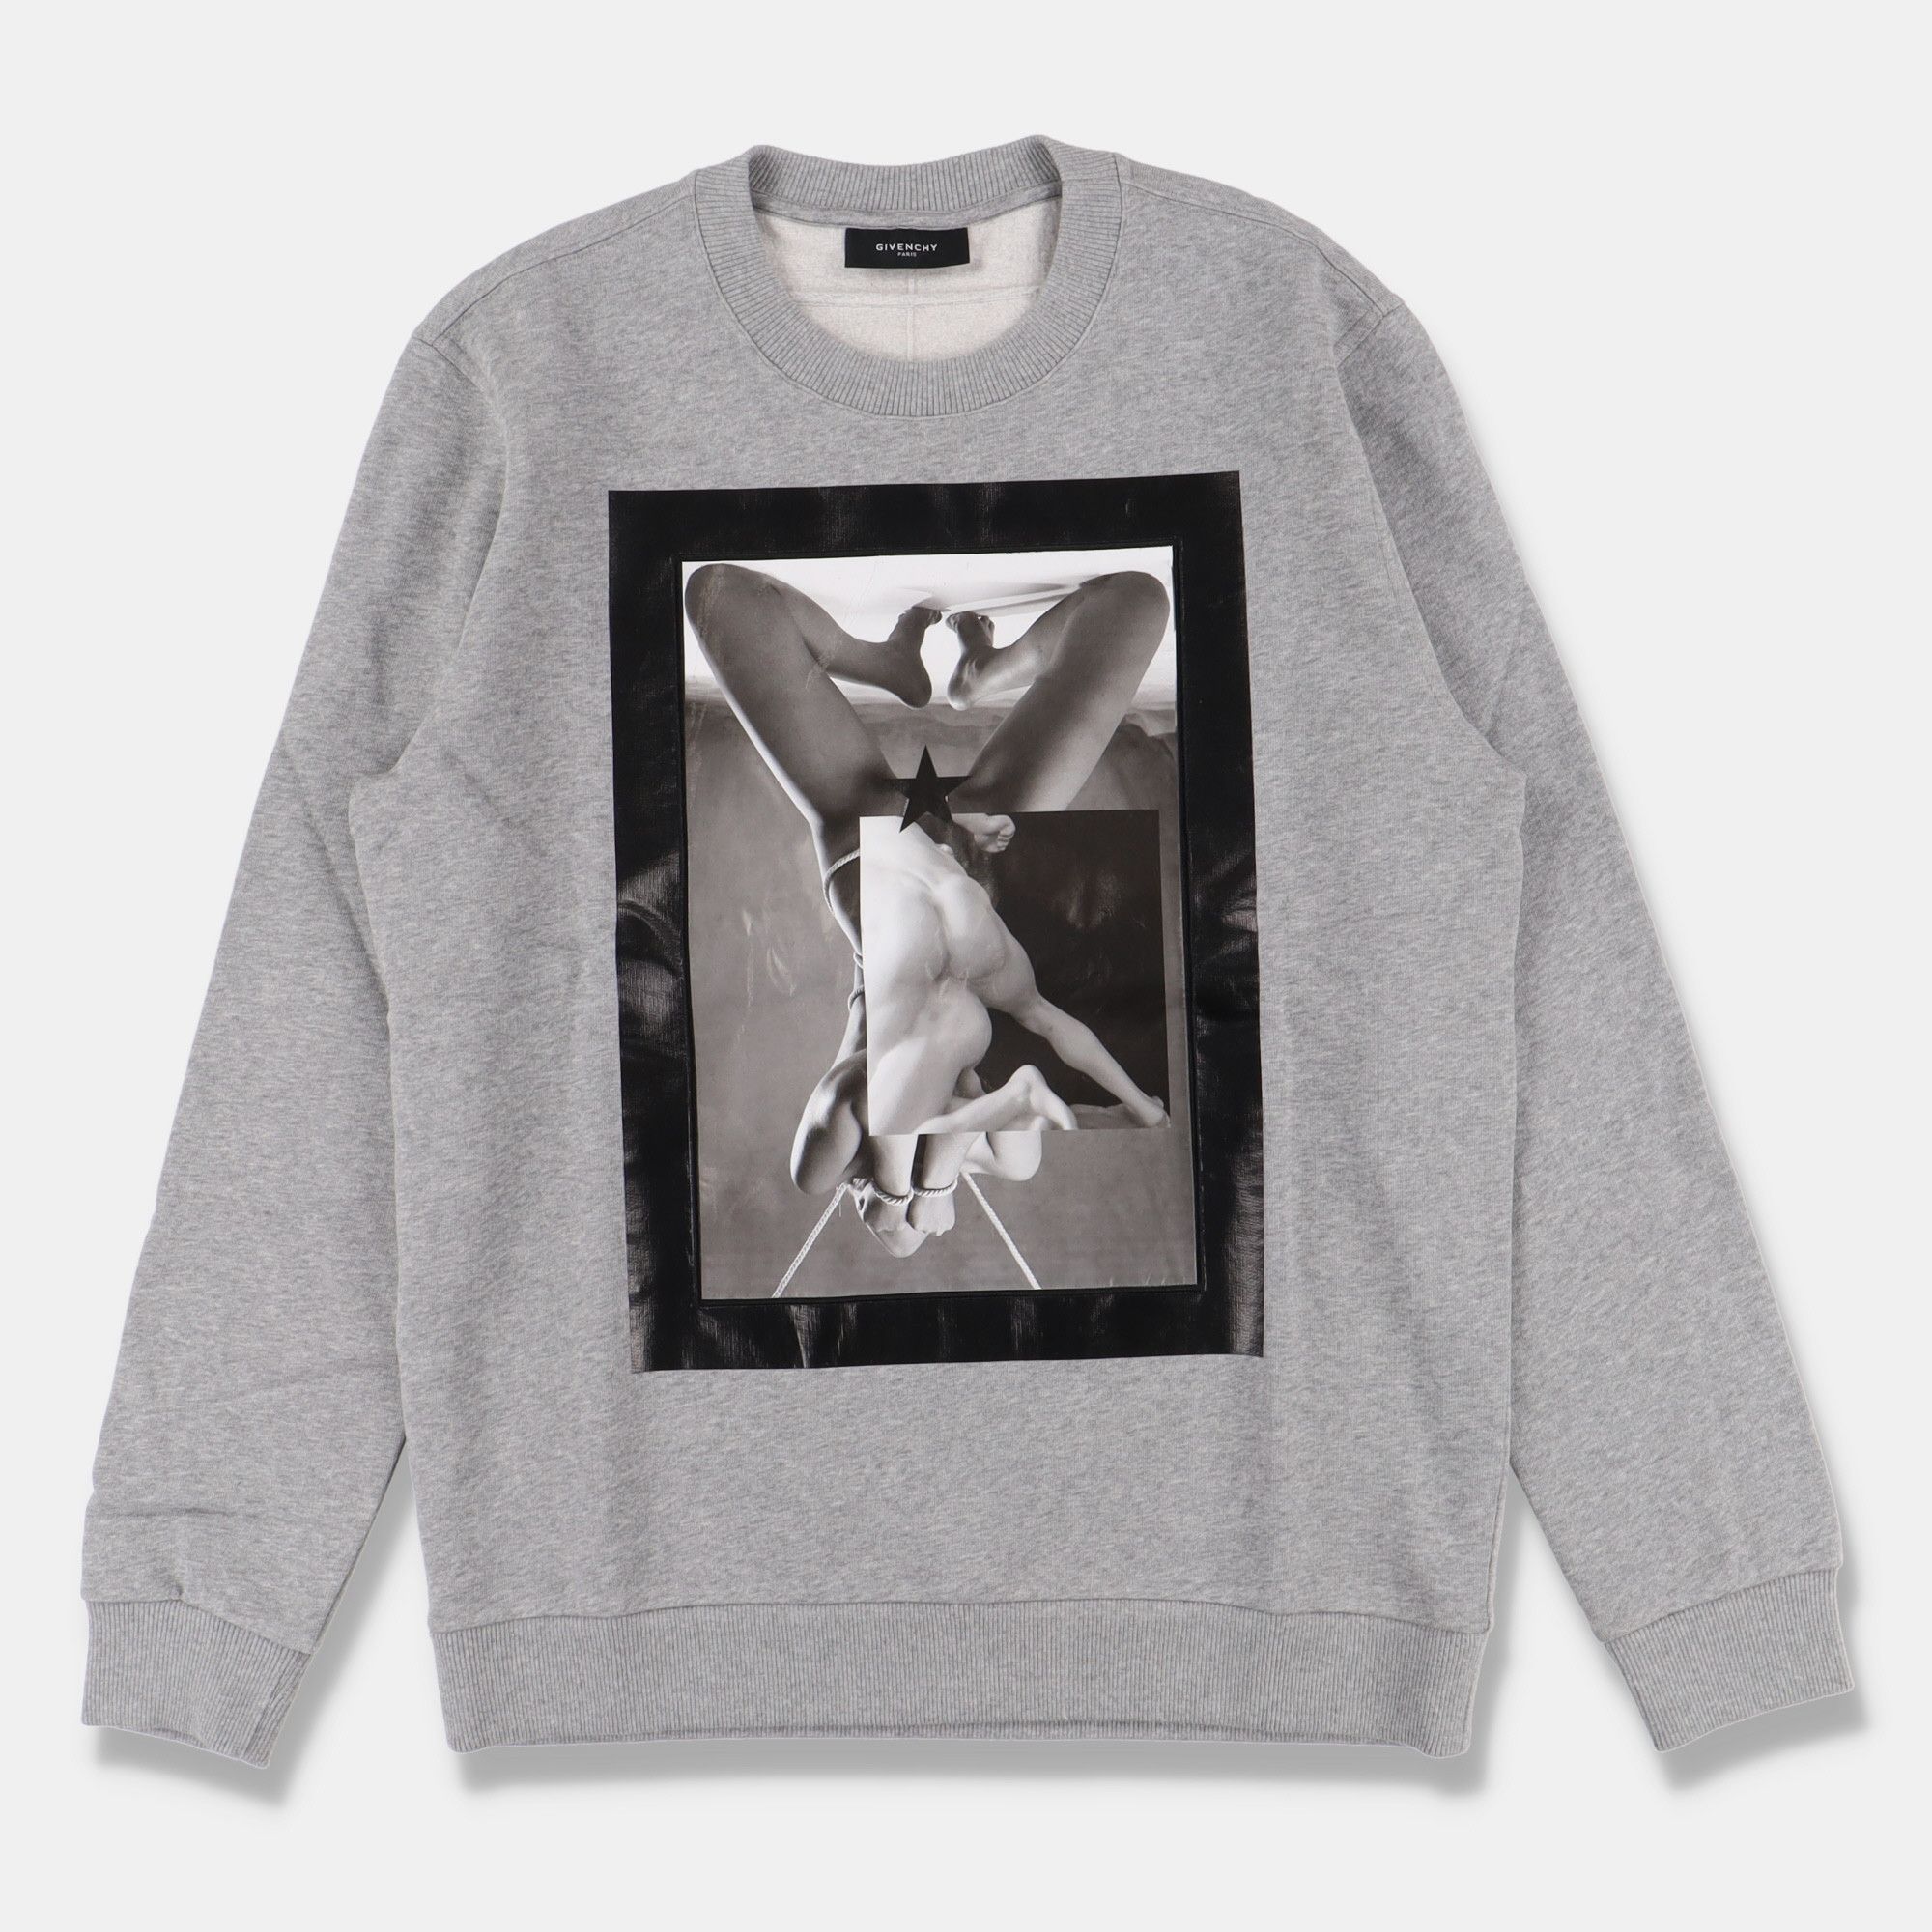 Givenchy Grey Robert Mapplethorpe Bondage Sweatshirt | Grailed